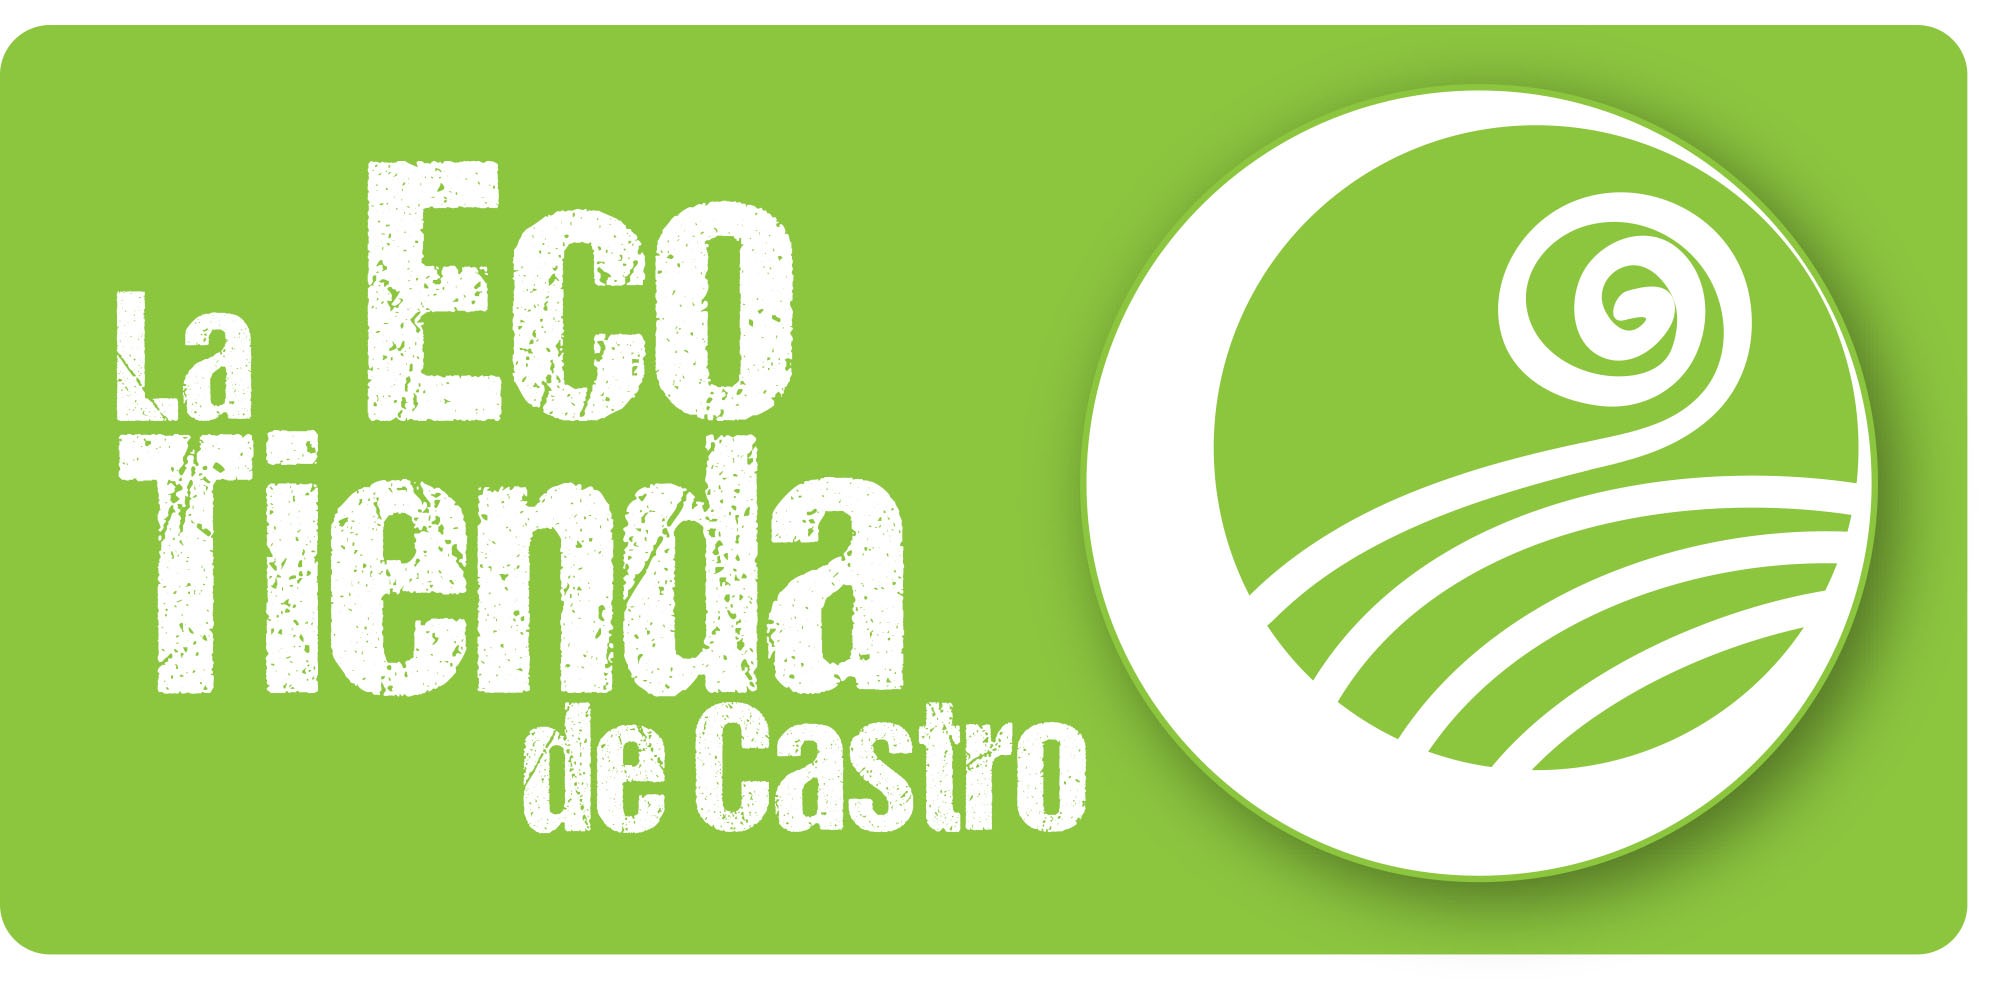 La EcoTienda de Castro